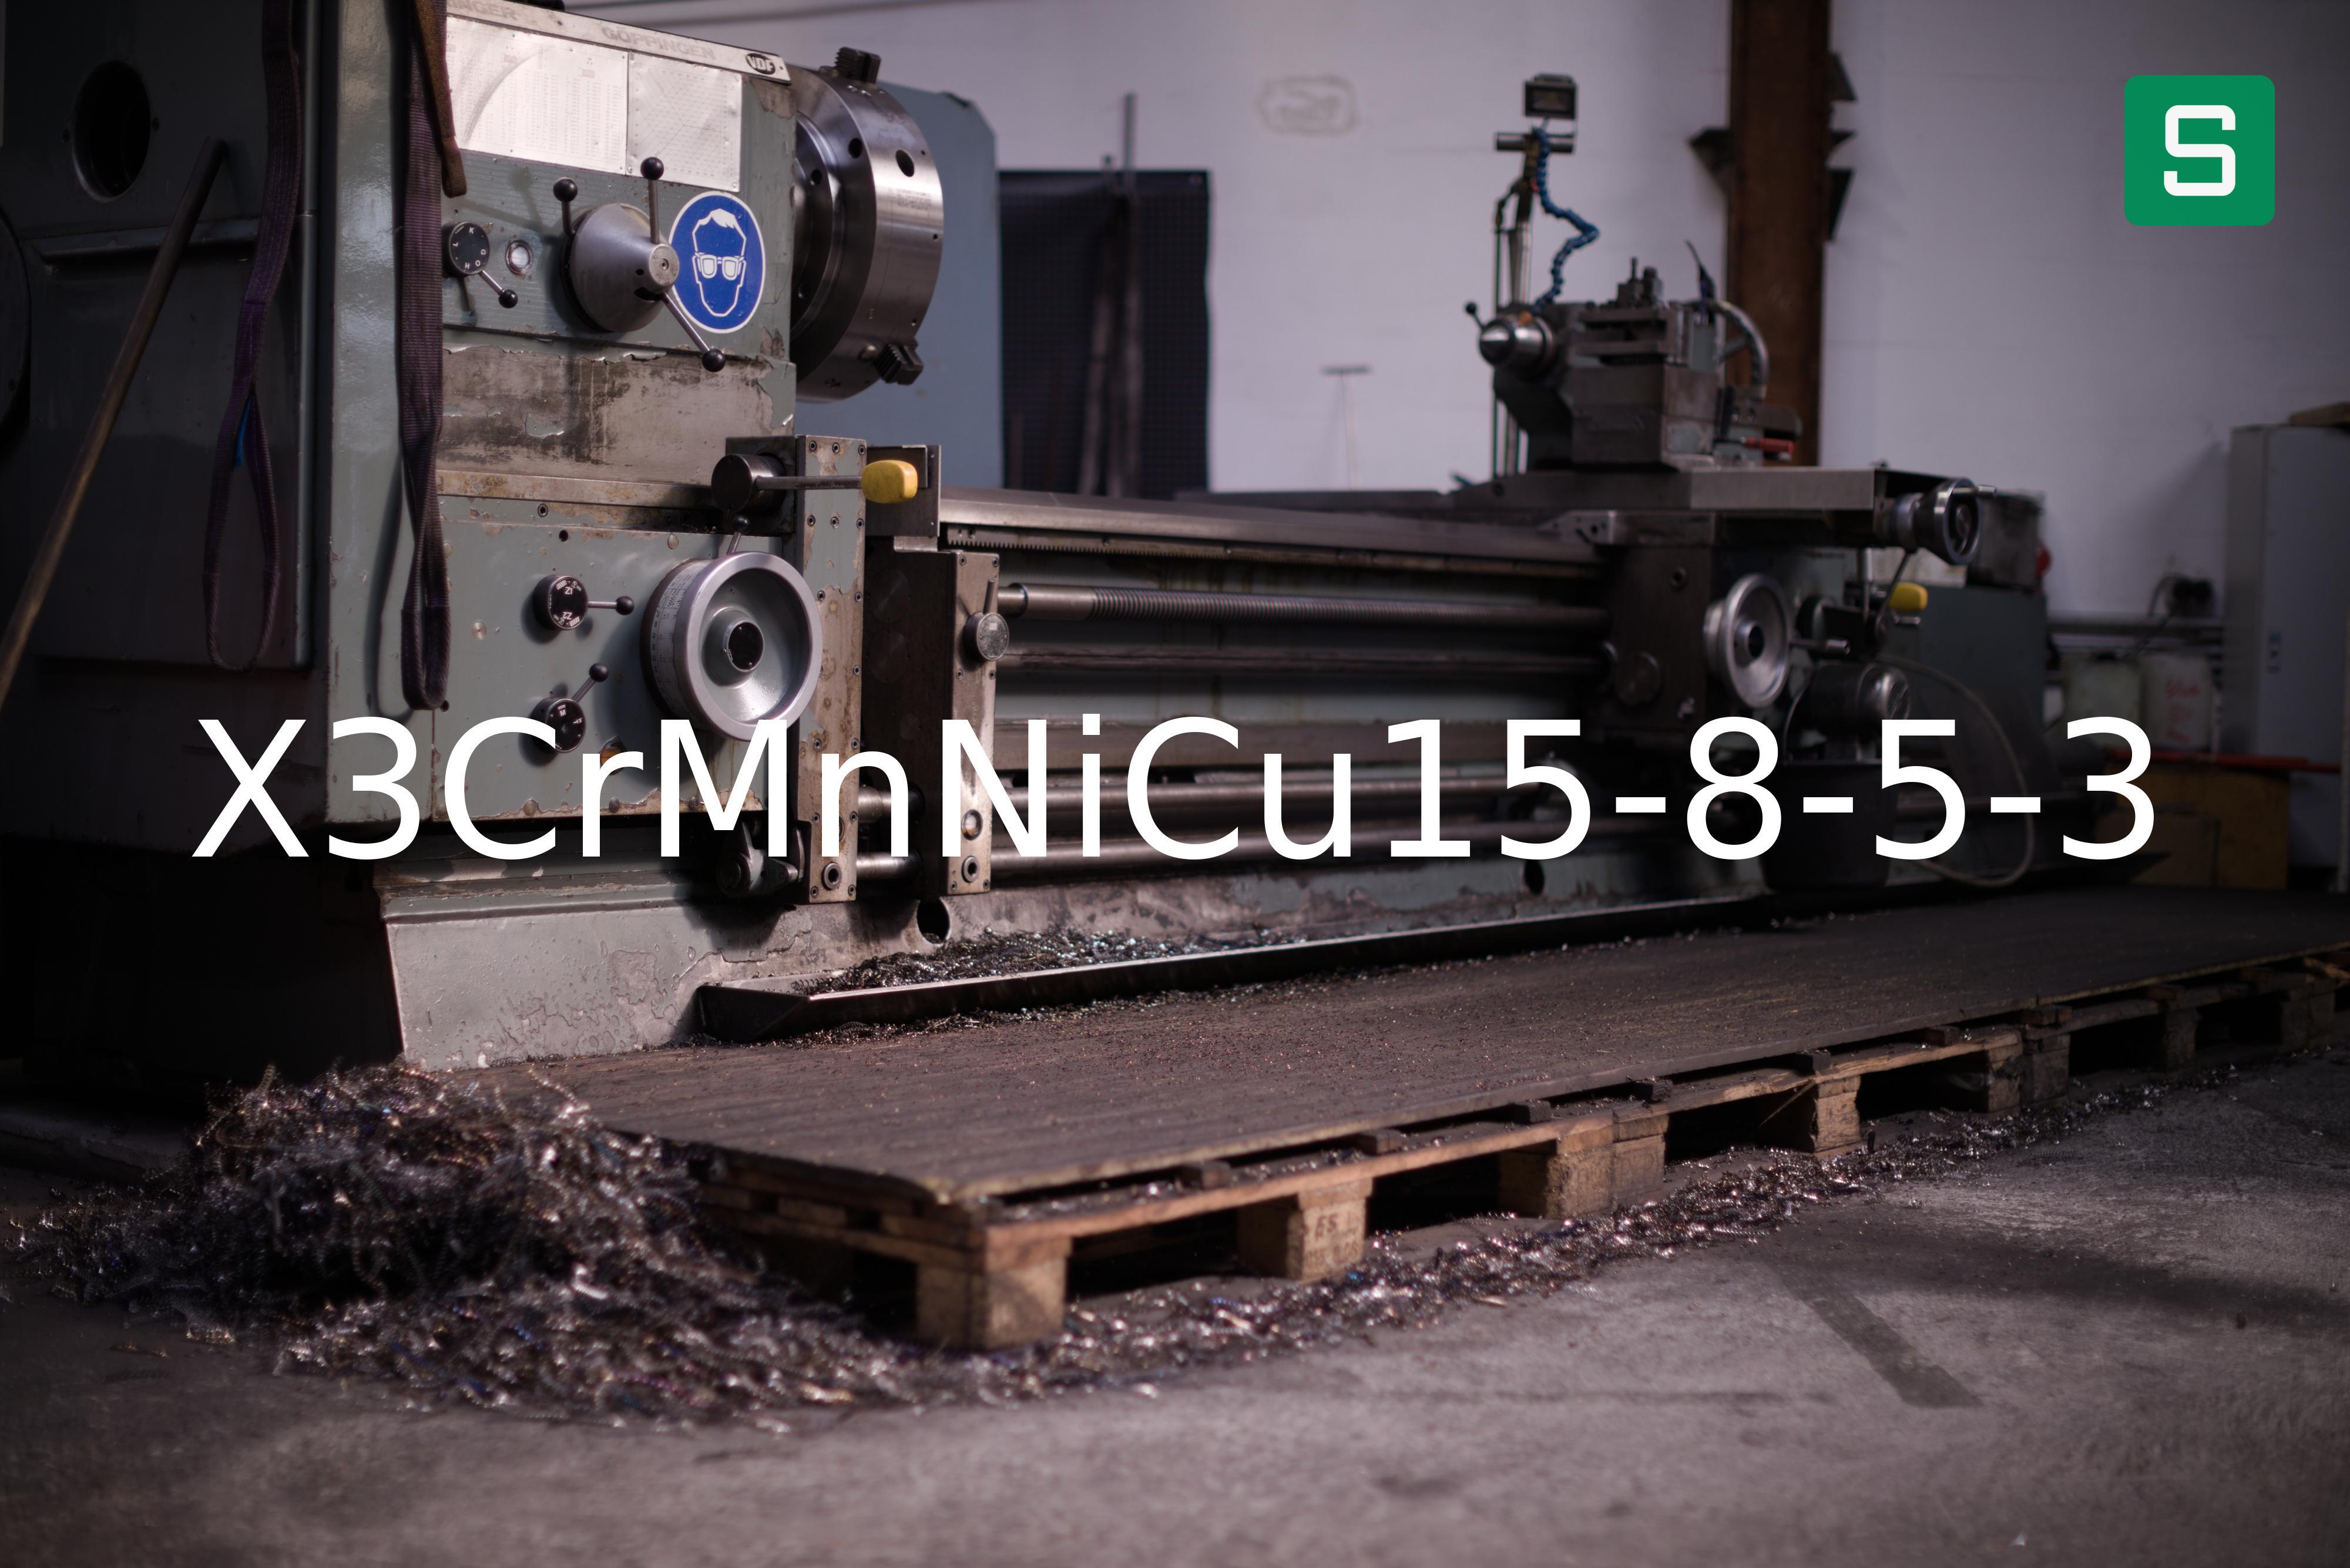 Steel Material: X3CrMnNiCu15-8-5-3